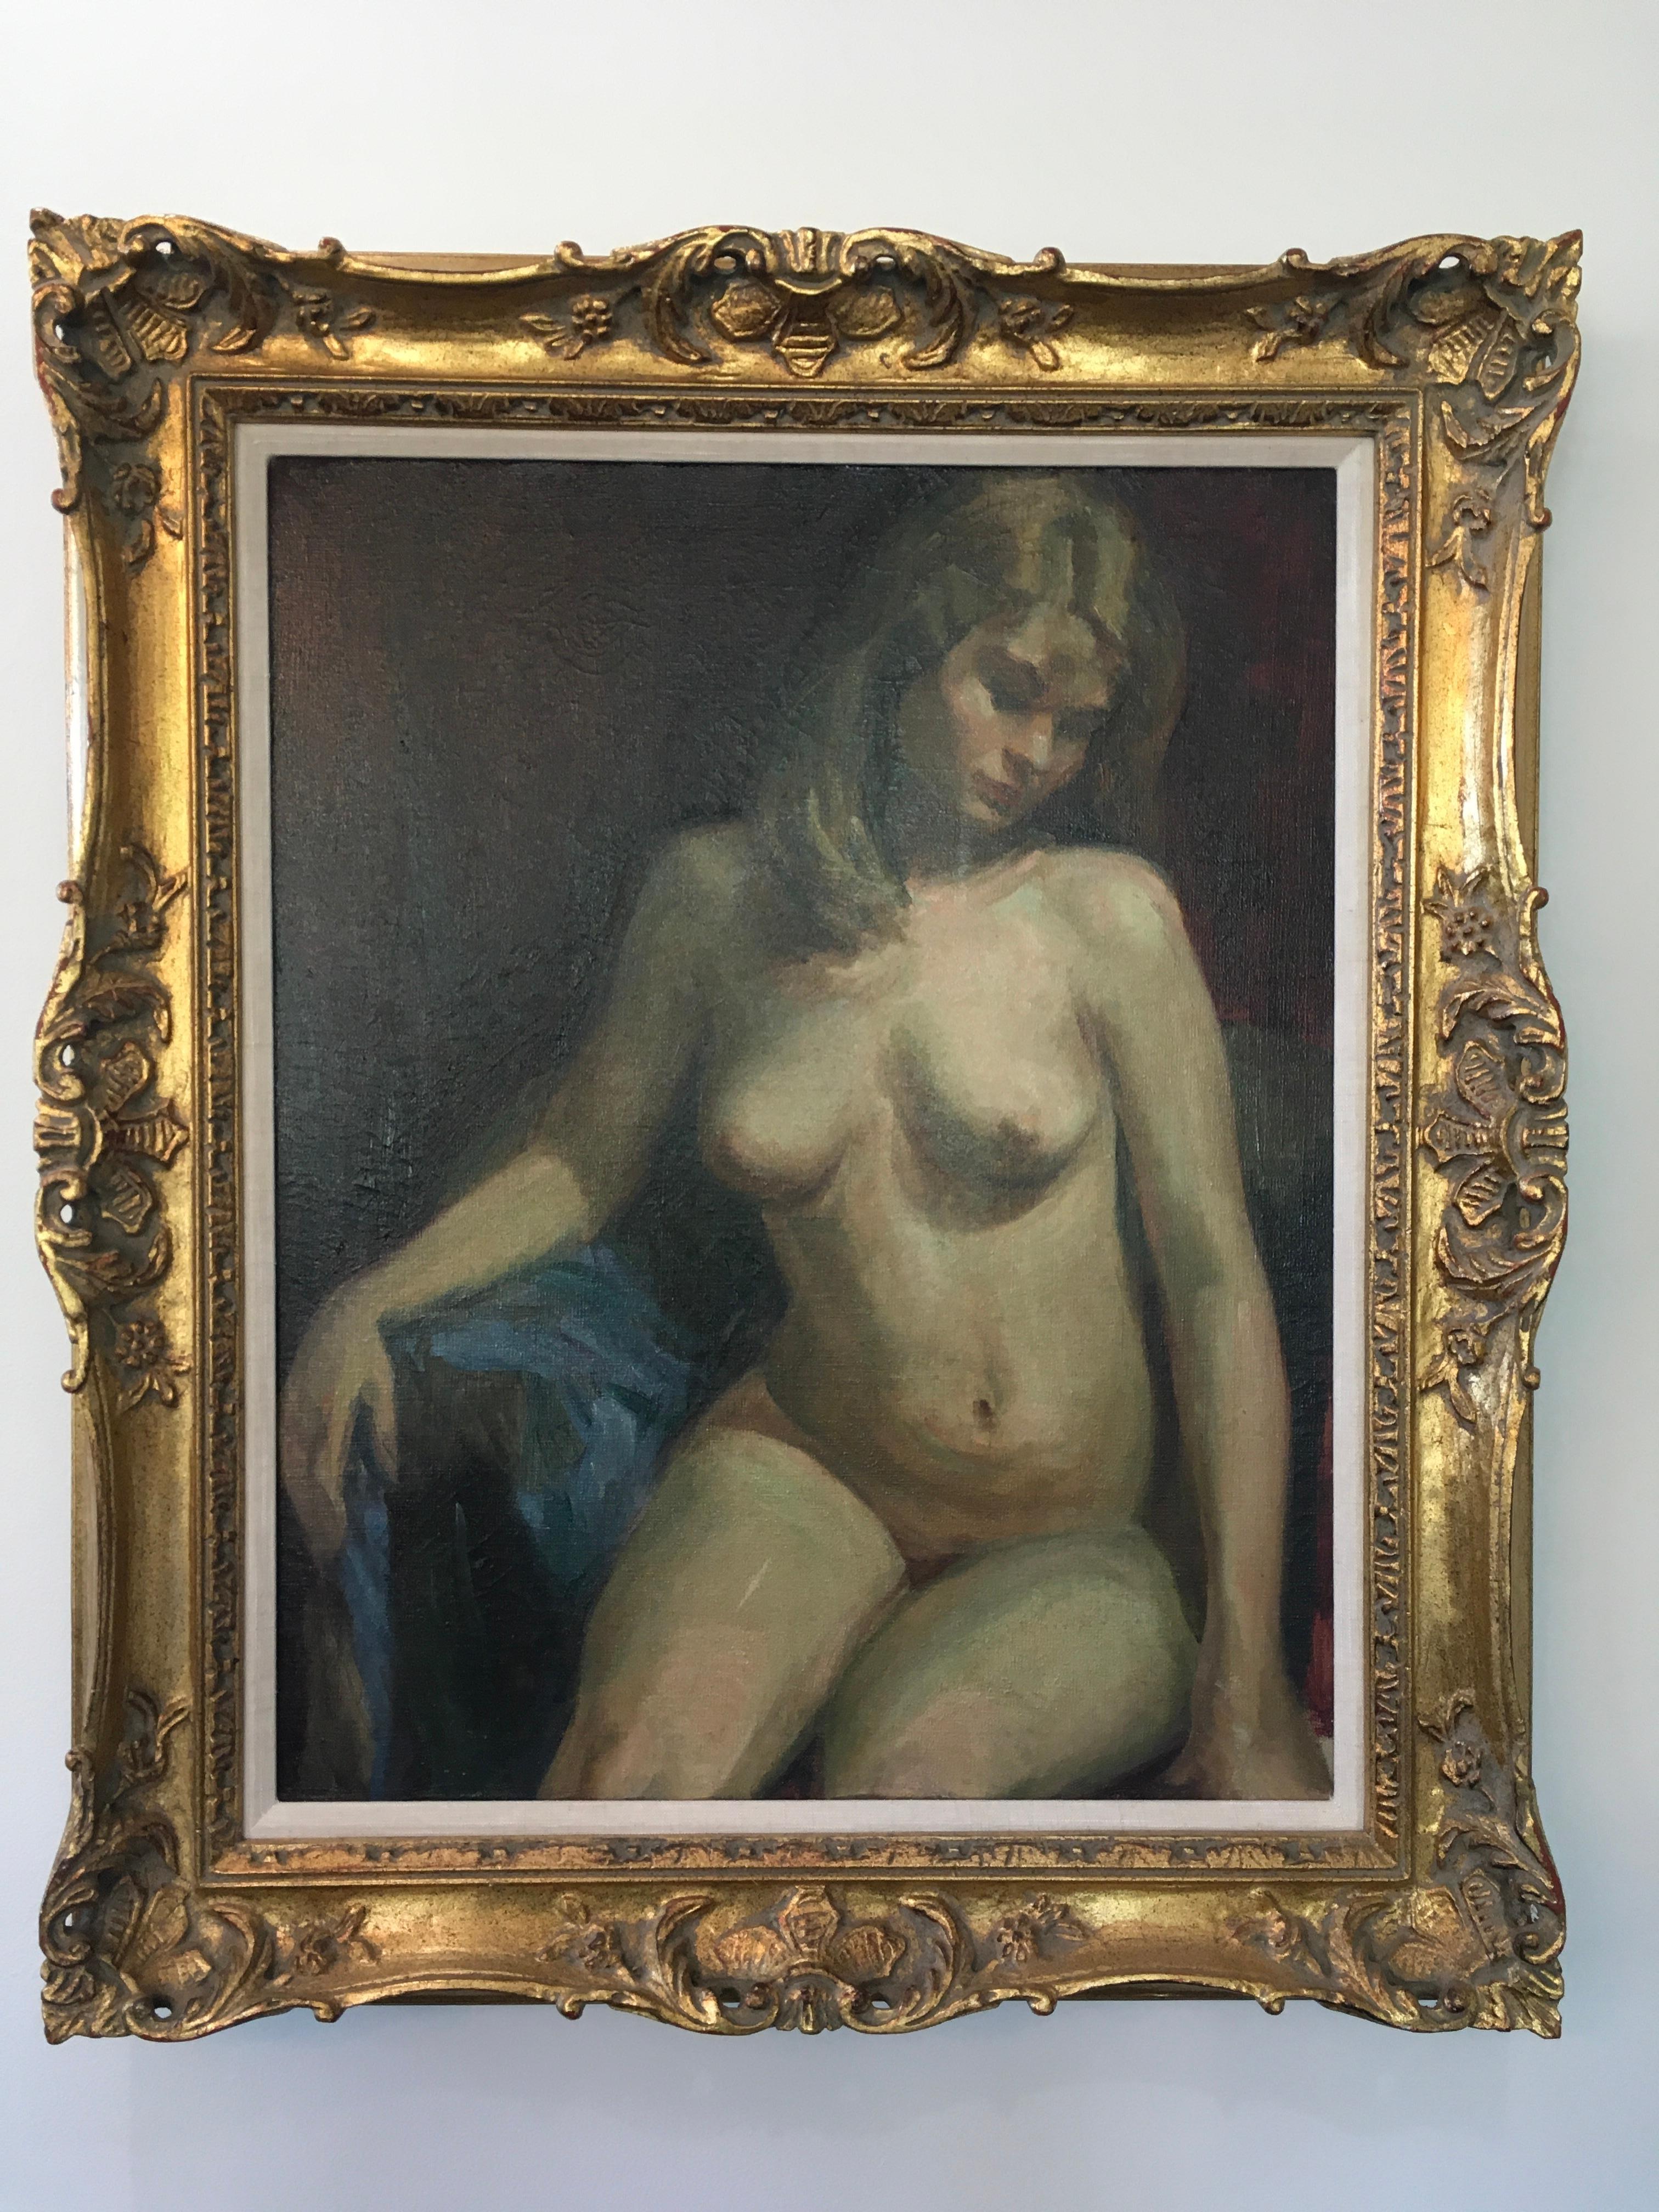 Figurative Painting Charles G. Bockmann - Classic Seated Female Nude", par Charles G. Bockman, peinture à l'huile sur toile